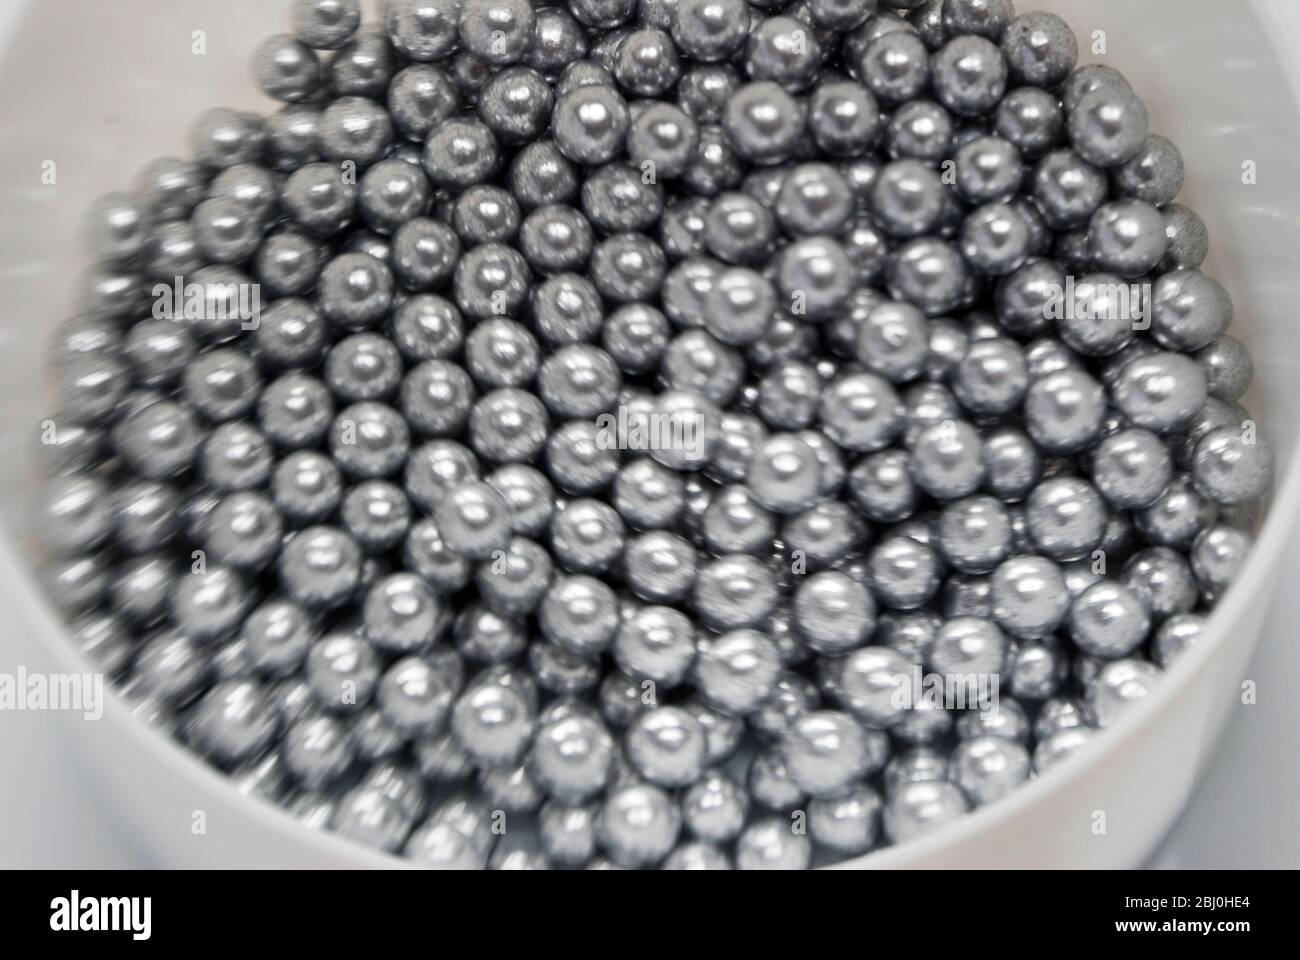 Essbare Silberkugeln für die Kuchendekoration, Aufnahme mit Lensbaby-Linse für unscharfen Rand-Effekt - Stockfoto